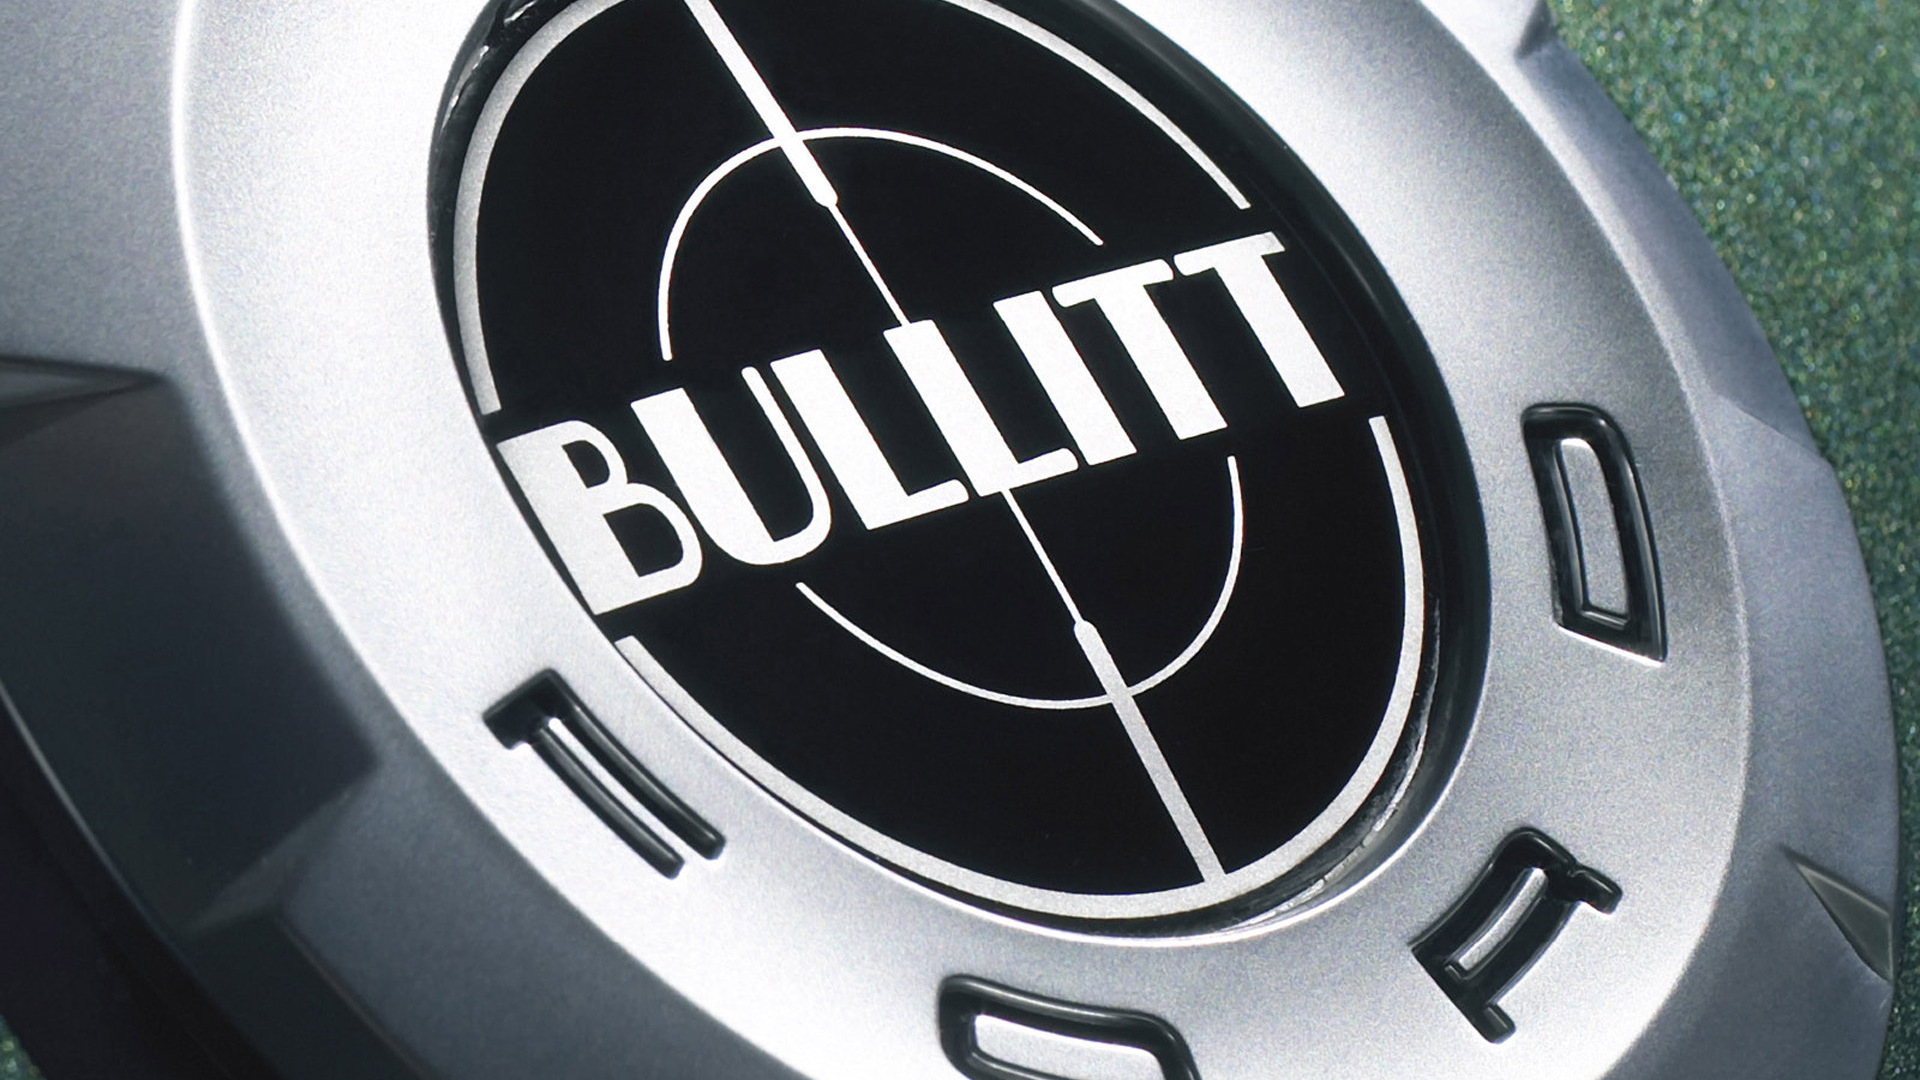 Ford Mustang Bullitt logo